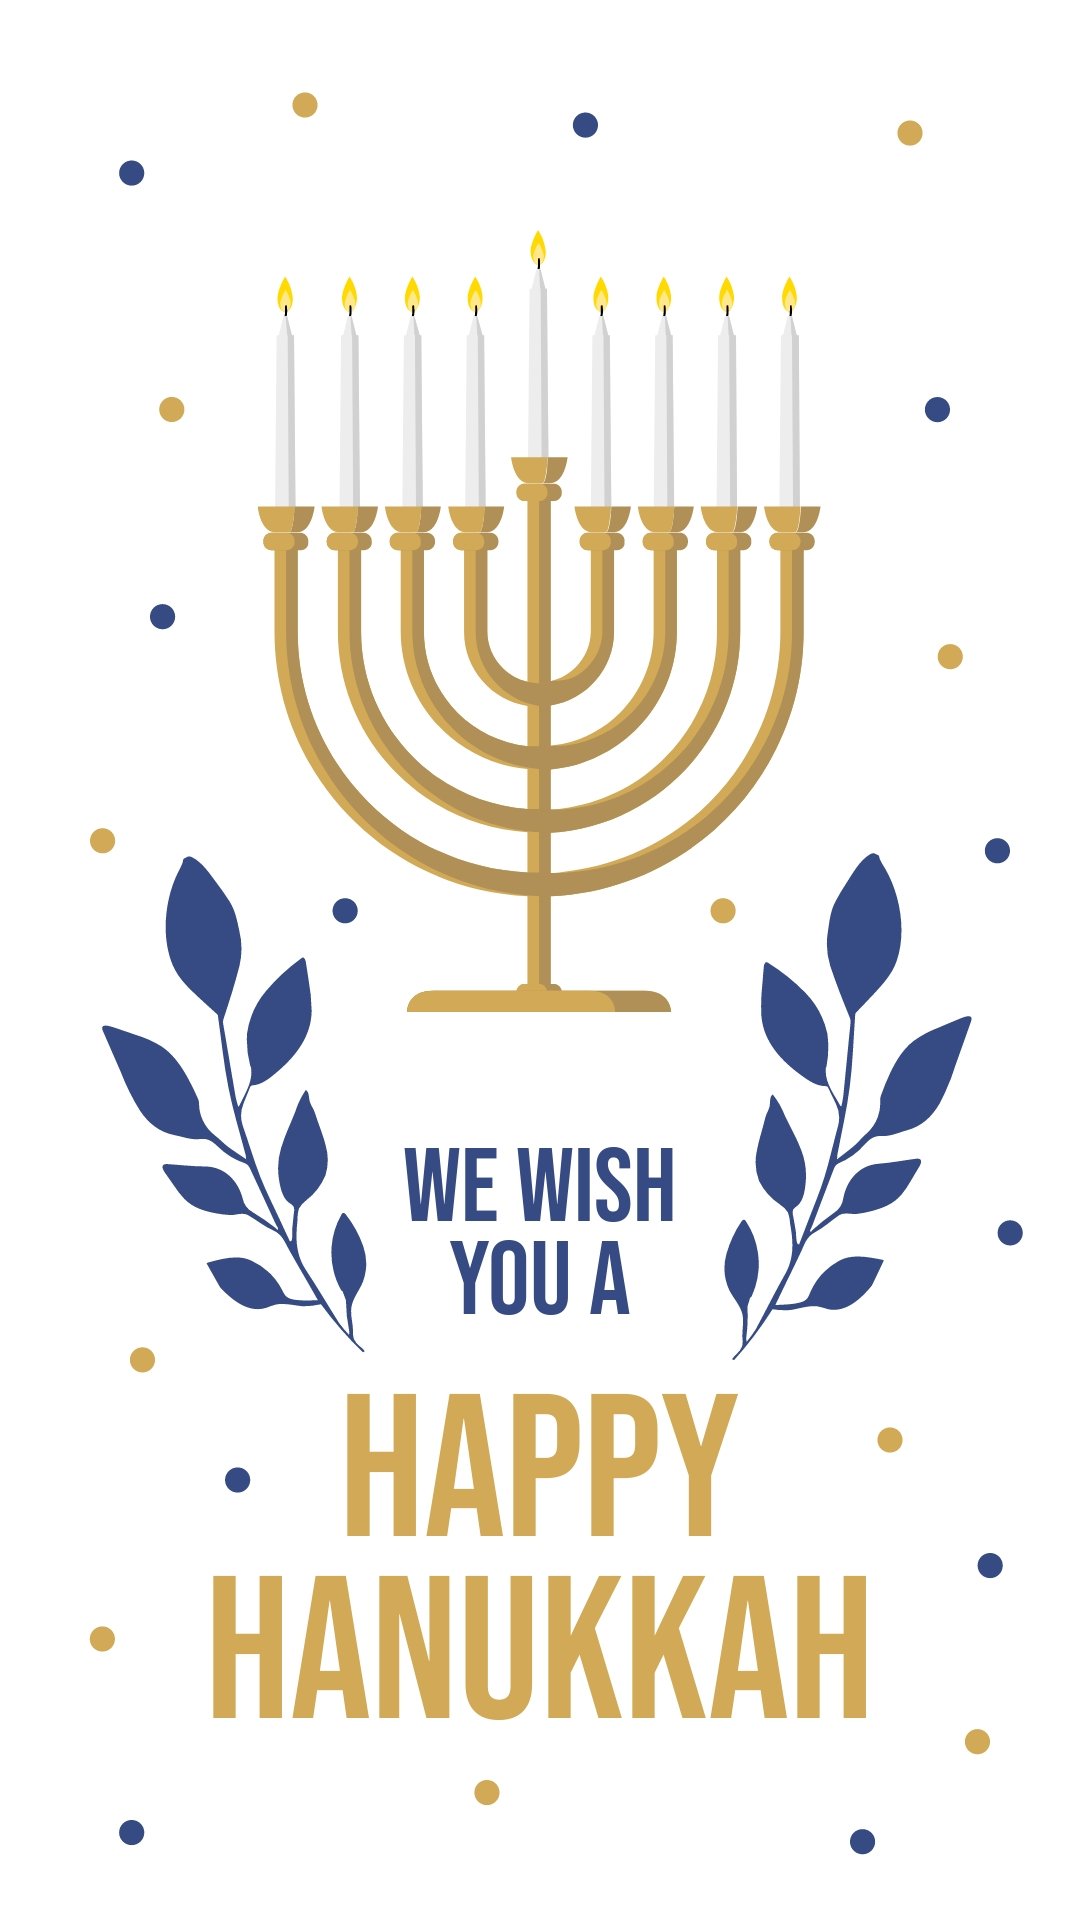 Happy Hanukkah Instagram Story